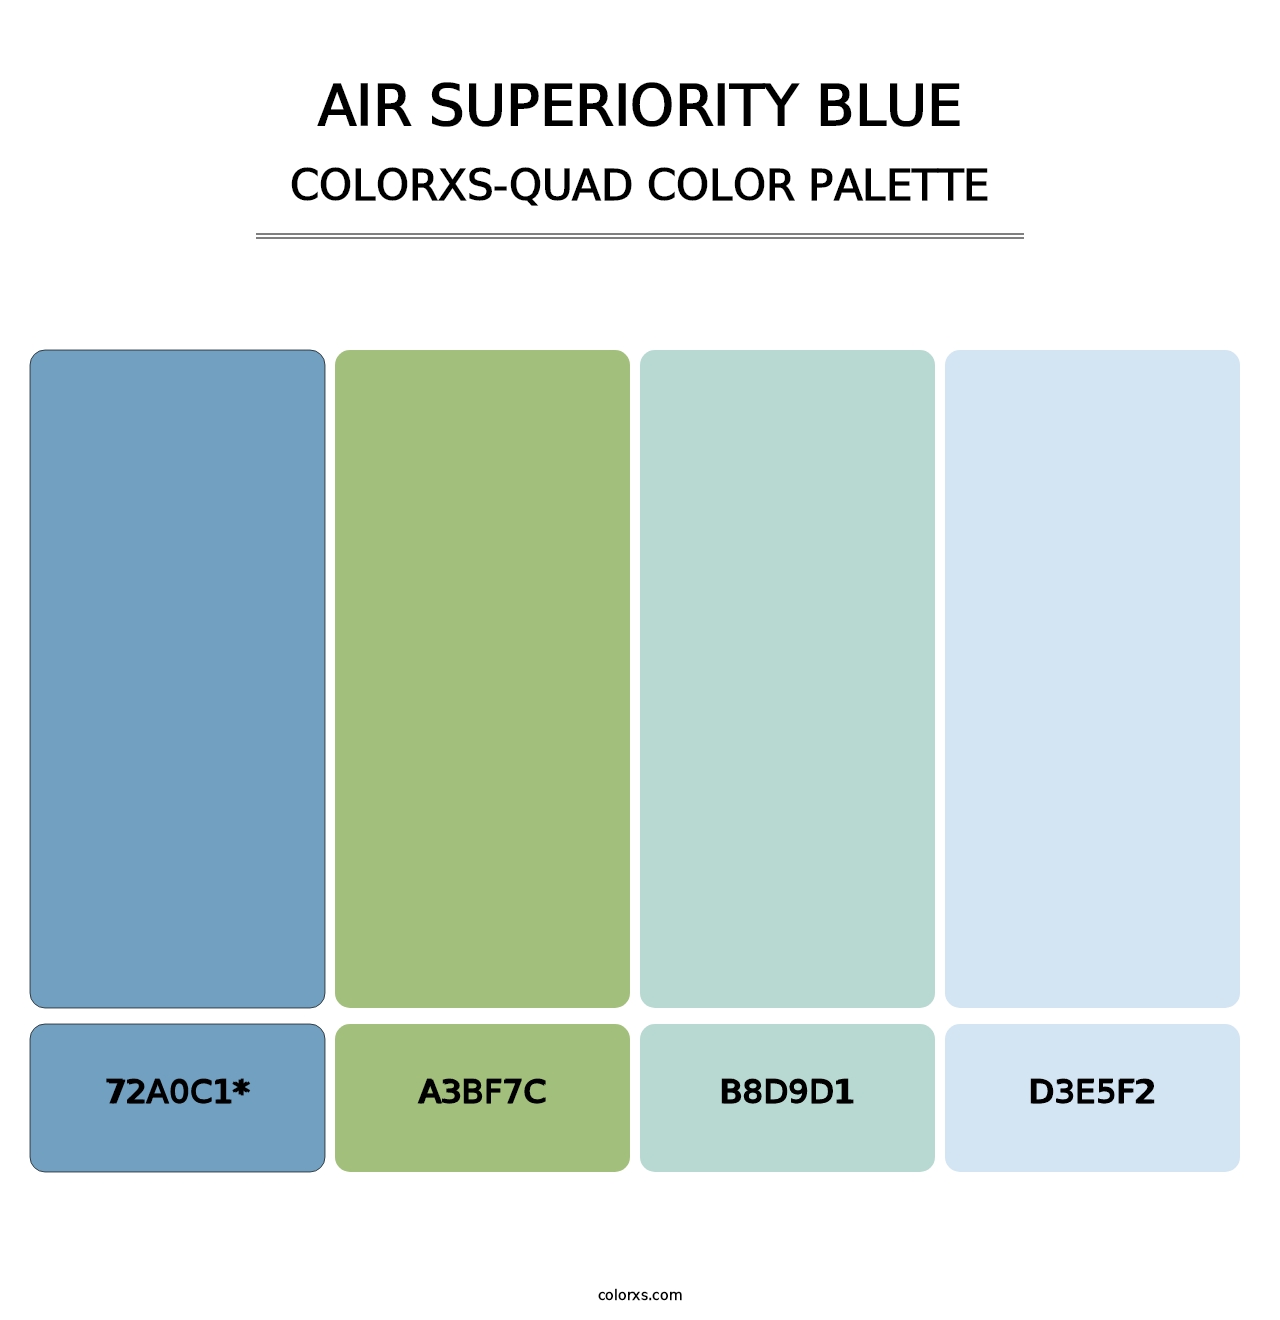 Air Superiority Blue - Colorxs Quad Palette